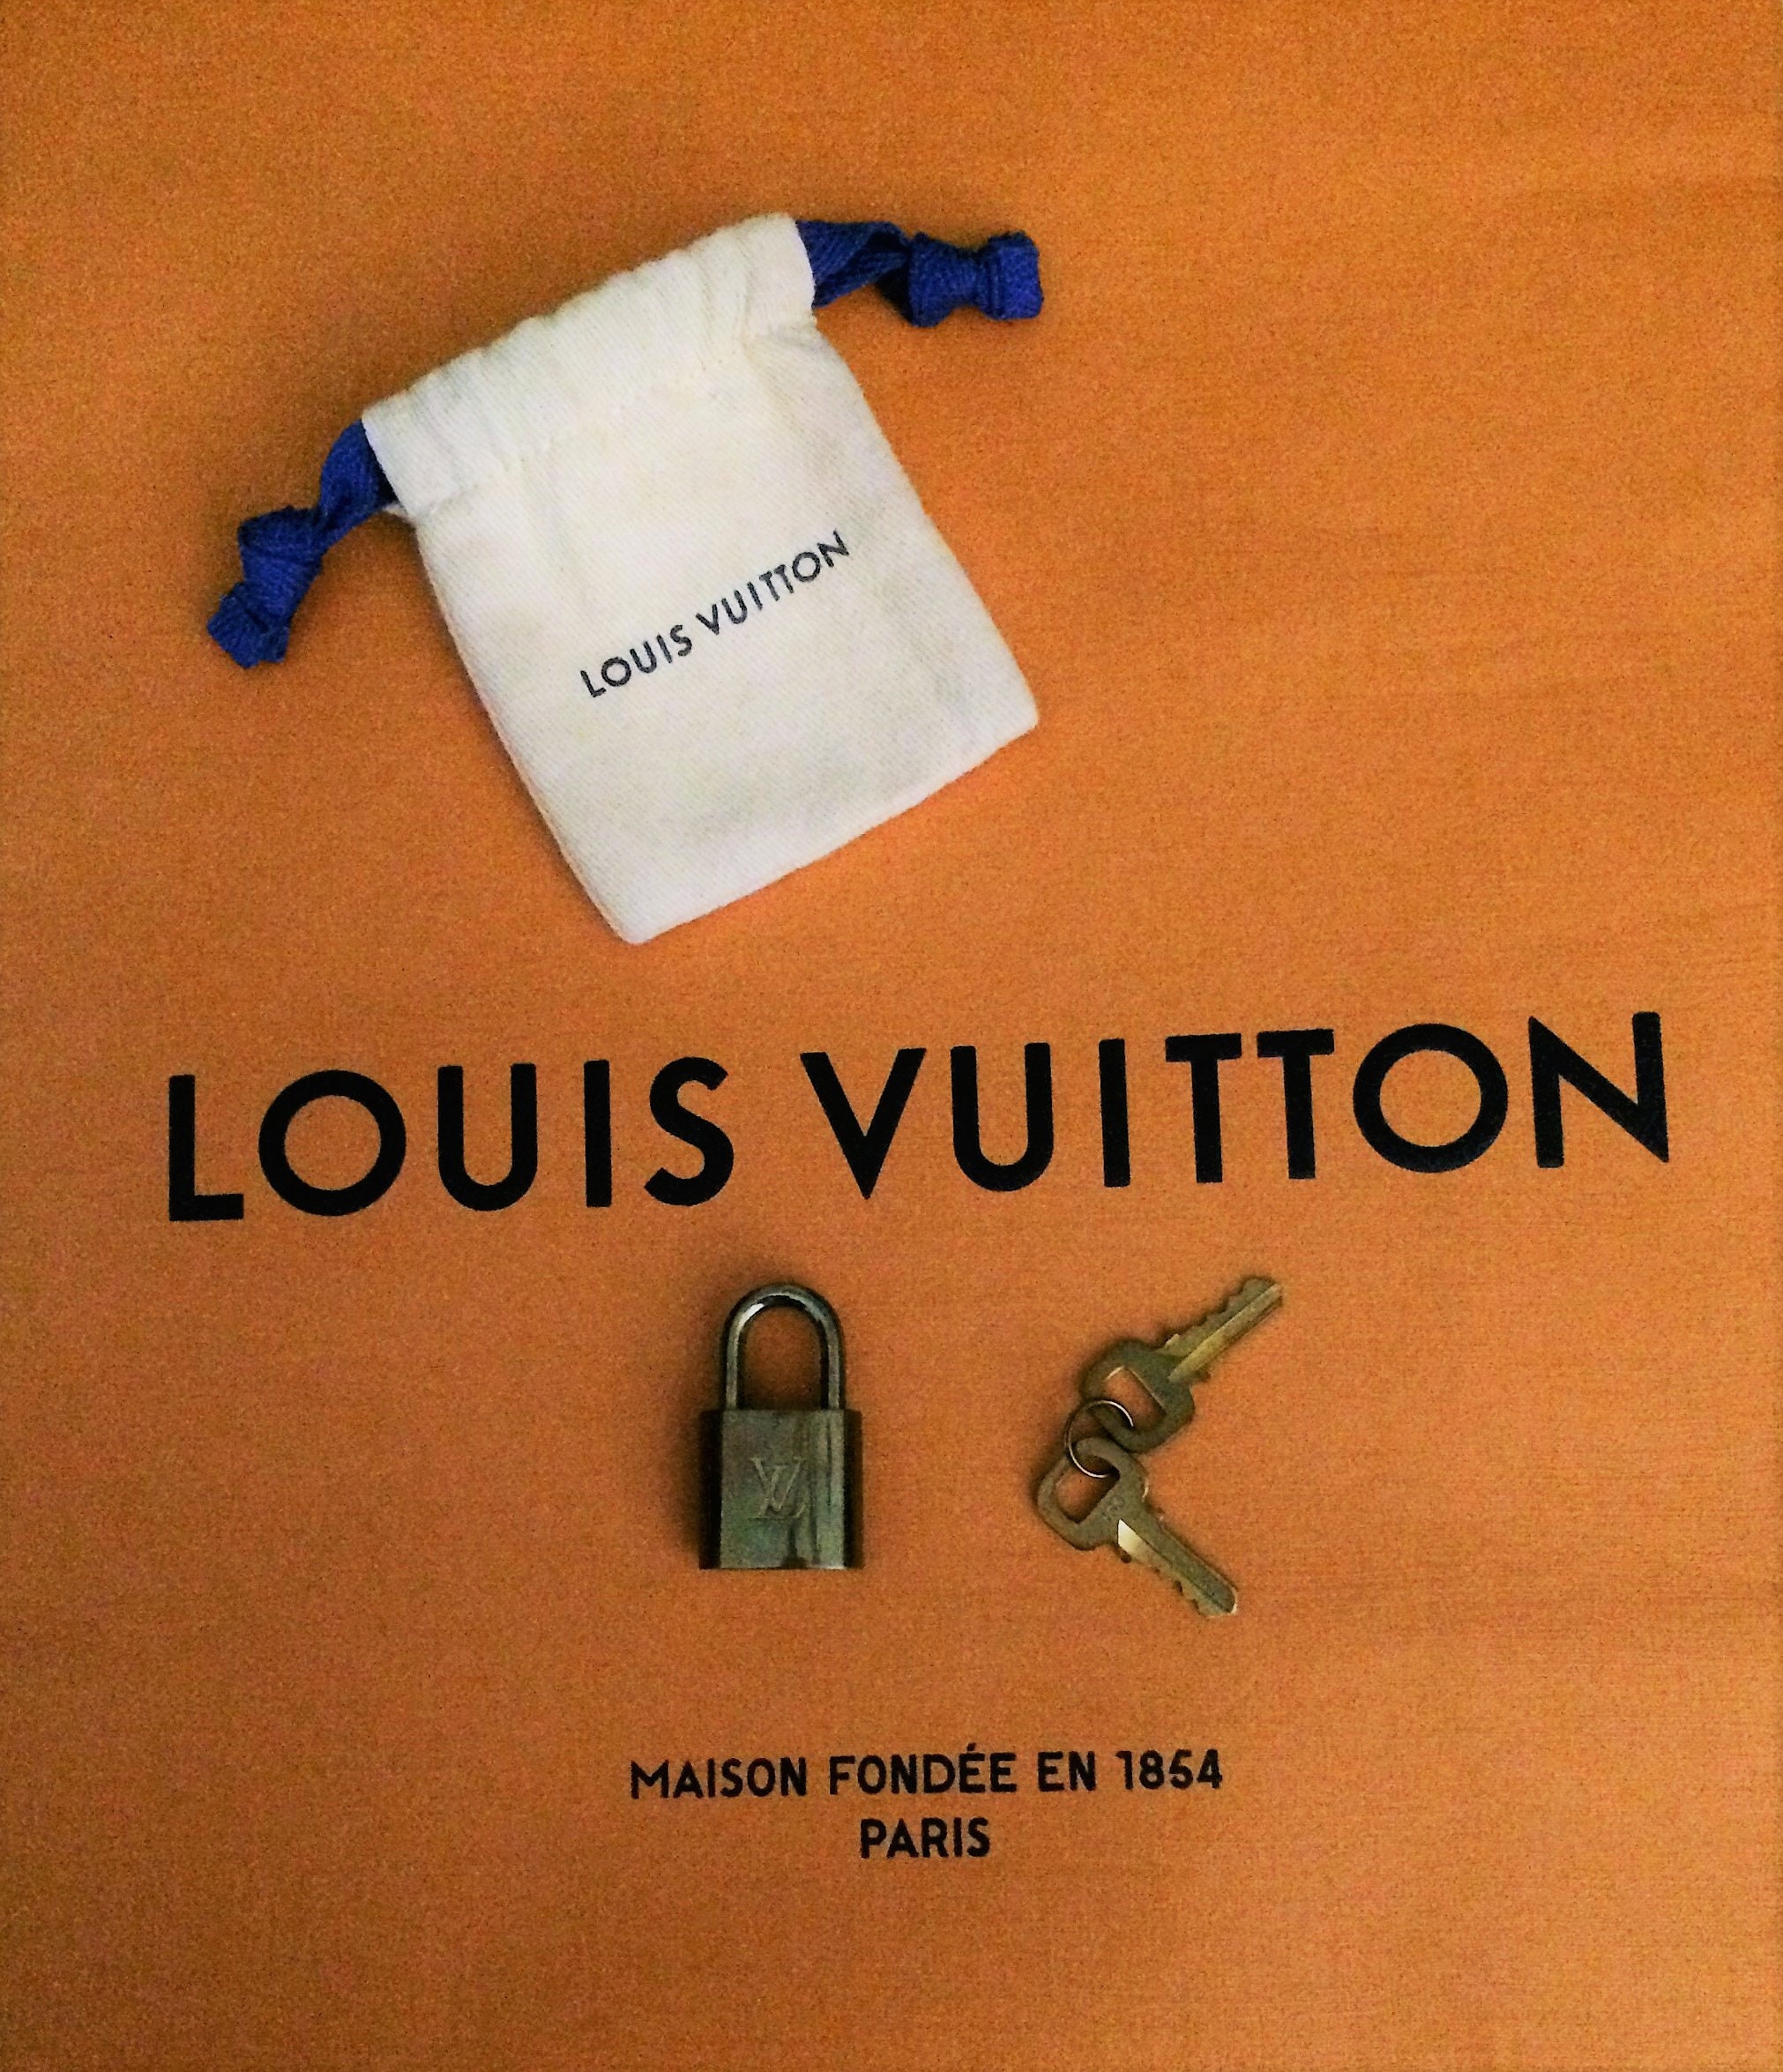 Personalized Louis Vuitton Paris Silhouette Golden Polo Shirt